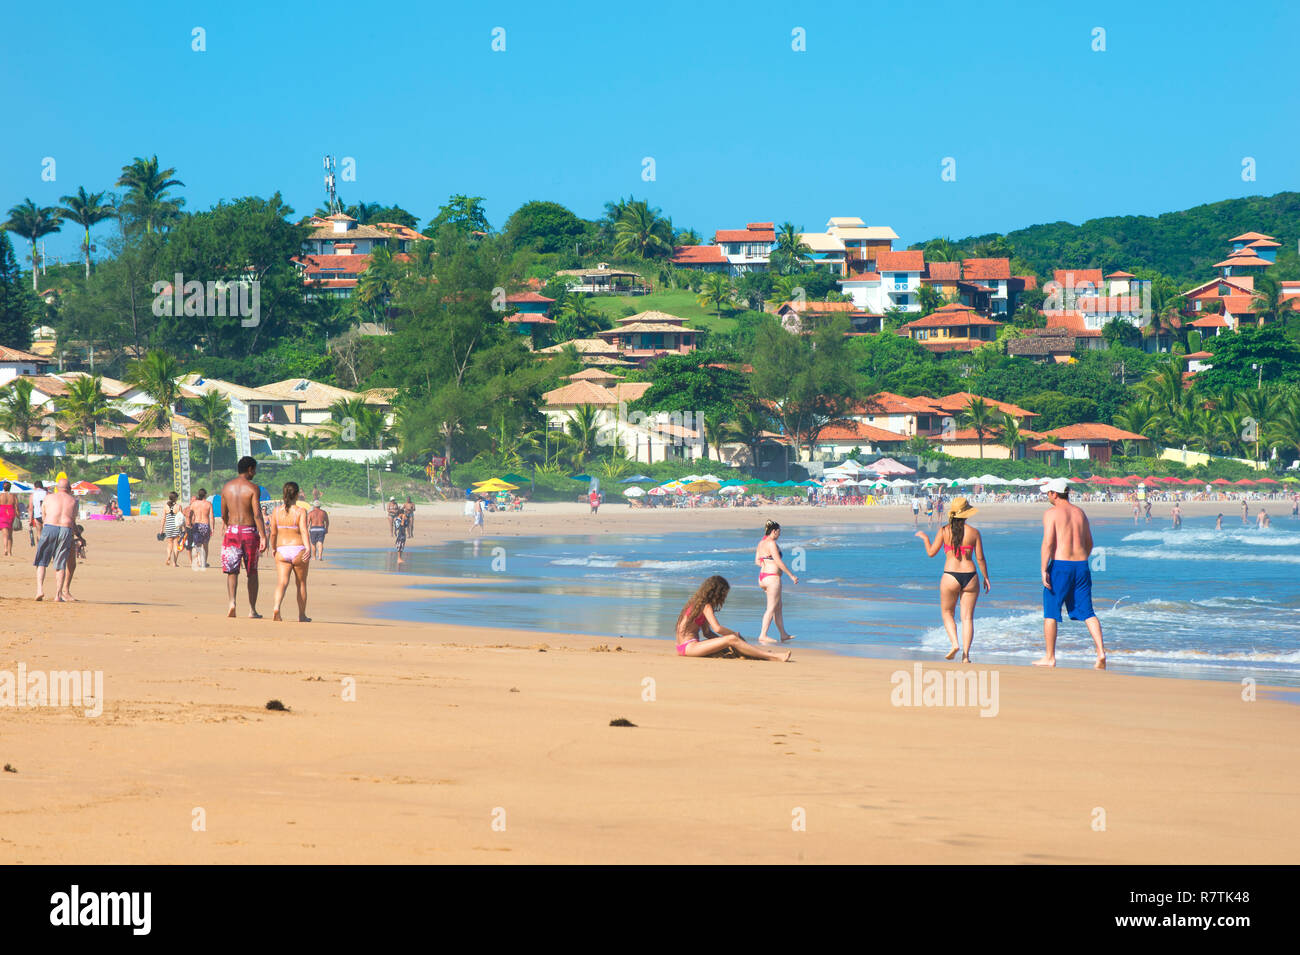 Praia da Geriba beach, Armação dos Búzios, Rio de Janeiro State, Brazil Stock Photo